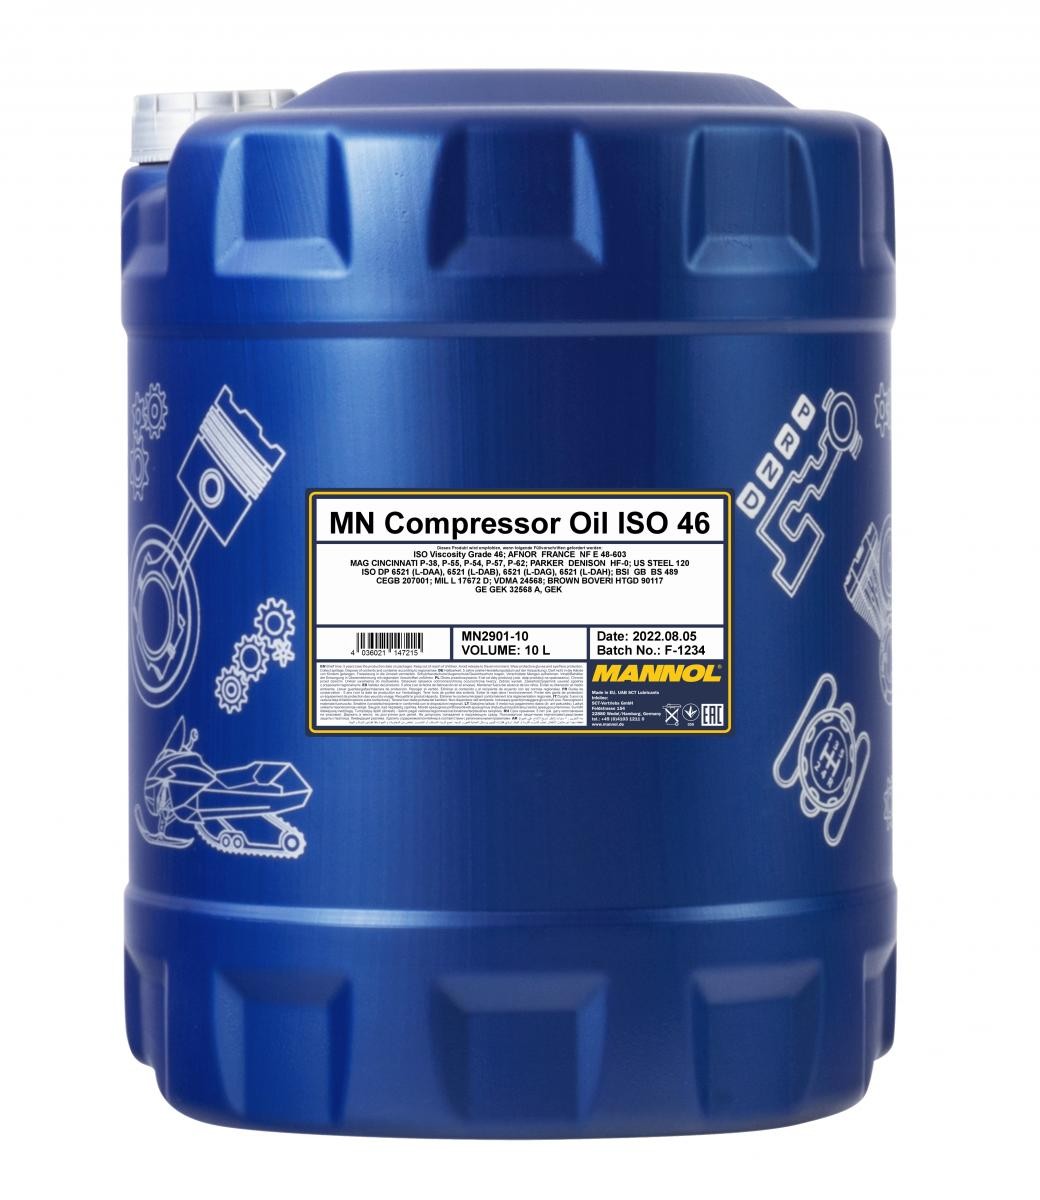 Air con compressor MANNOL Compressor Oil ISO 46 Mineral Oil, VG 46 - MN2901-10